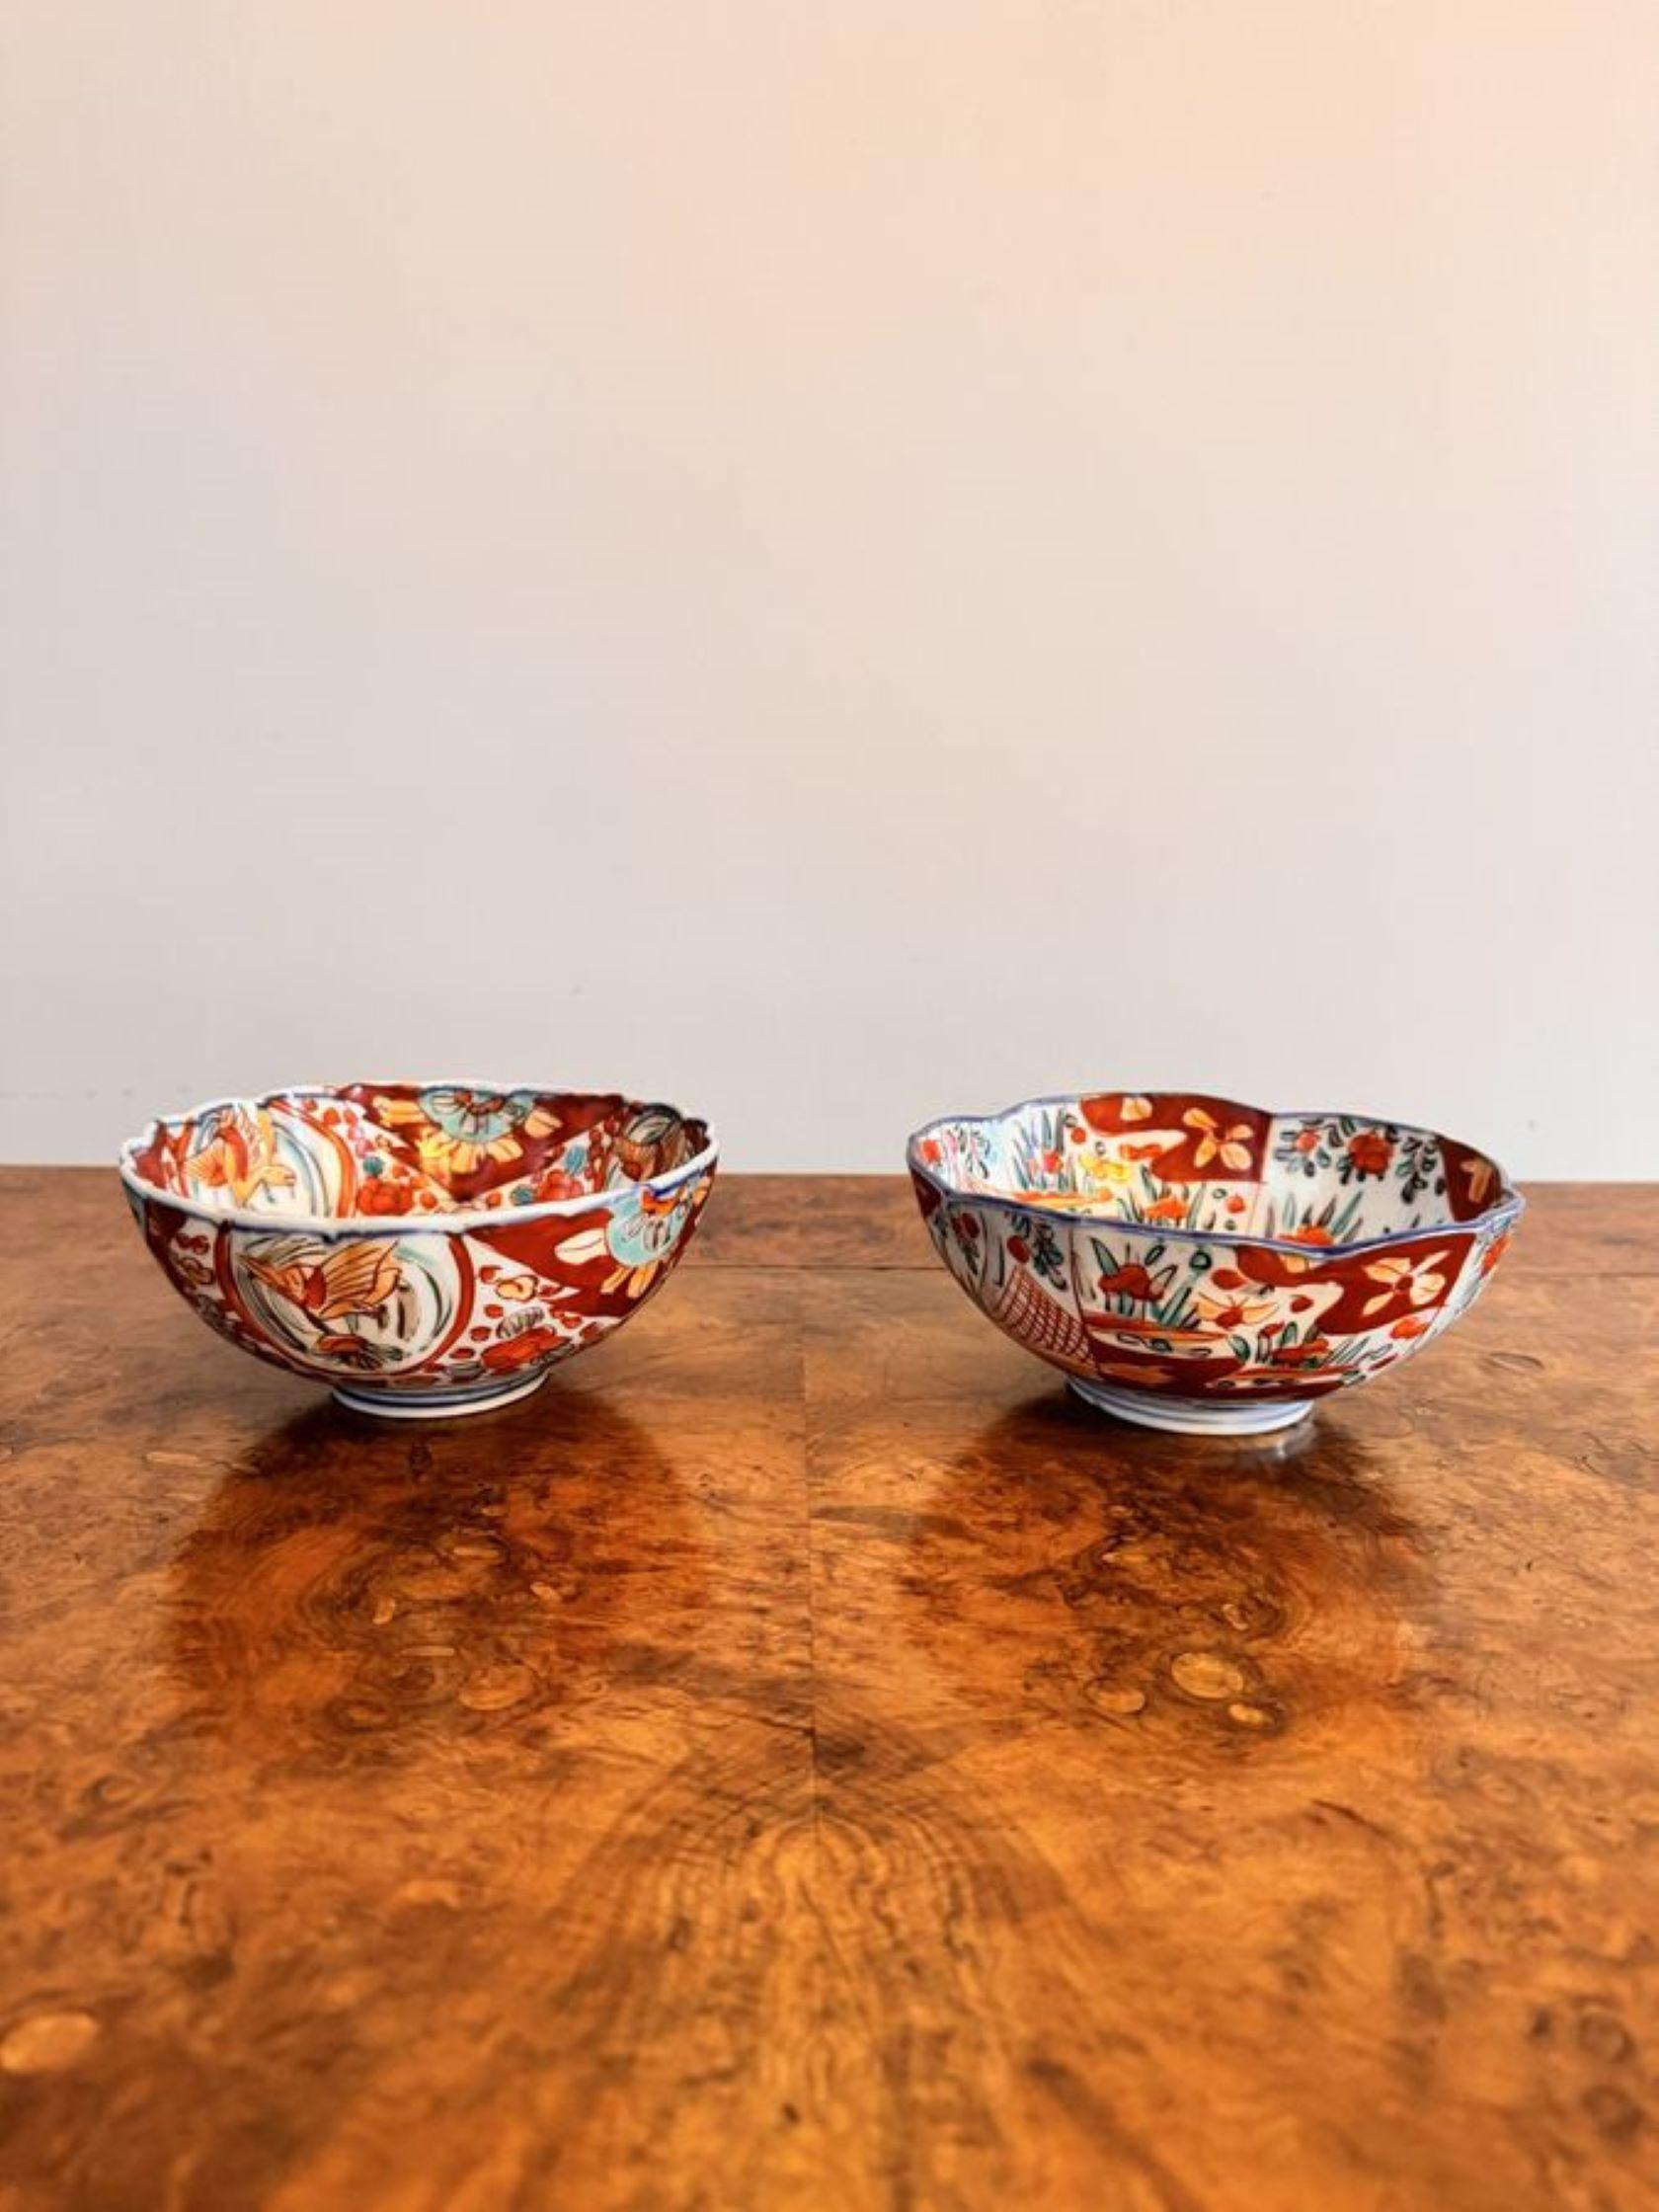 Collectional de cinq bols imari japonais anciens comprenant cinq bols imari japonais anciens, tous avec de jolis motifs individuels décorés de fleurs, d'arbres, de feuilles, d'oiseaux, de poissons et de rouleaux peints à la main dans de